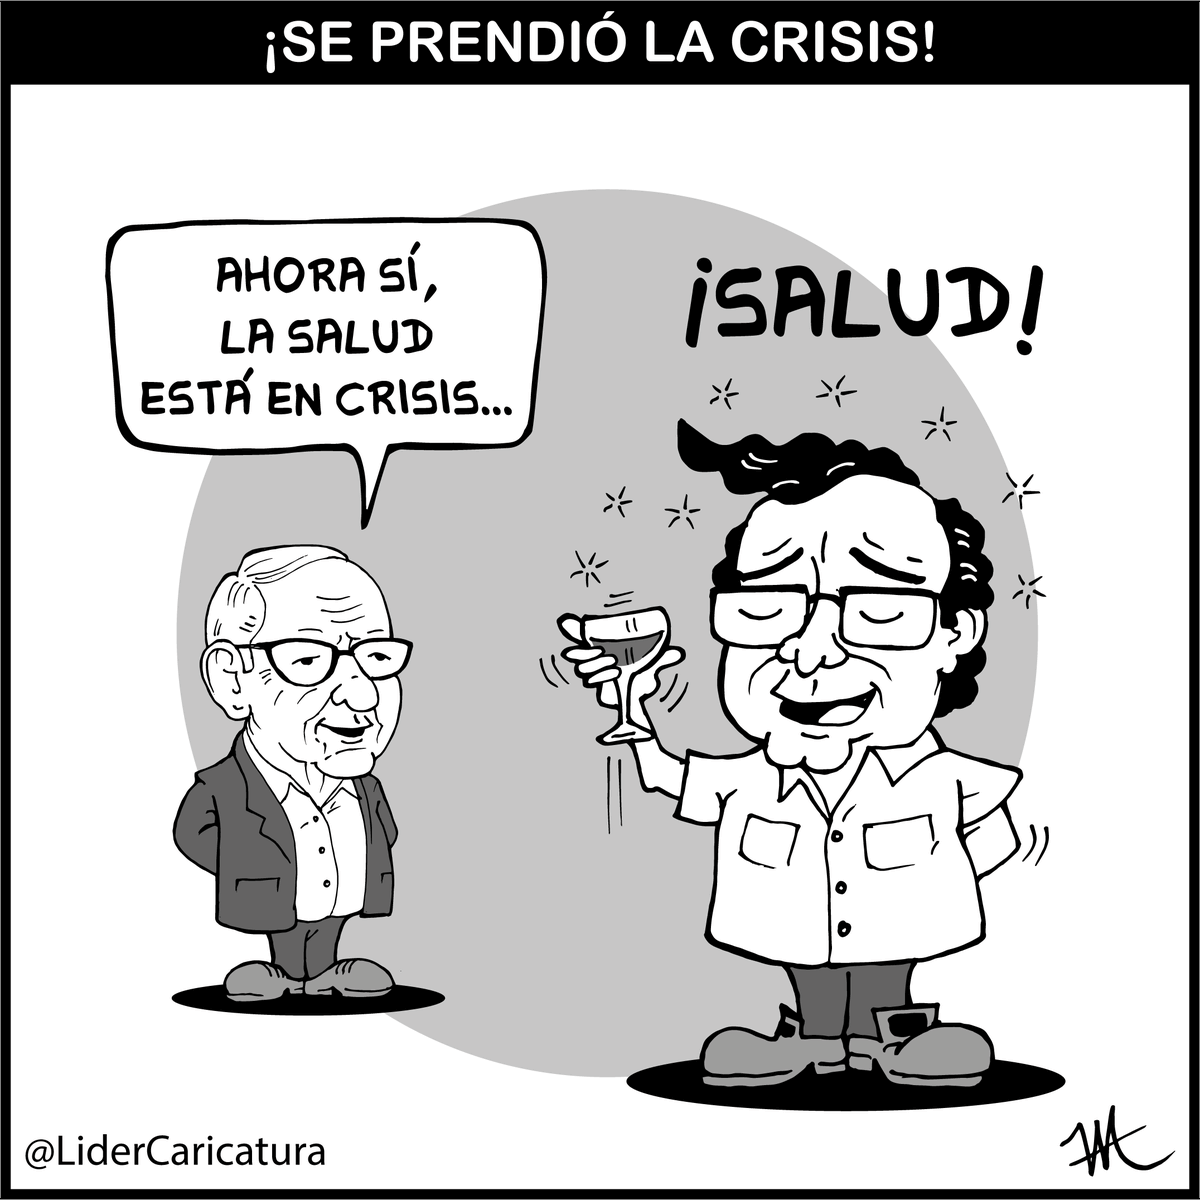 ¡Se prendió! #ReformaALaSalud #CrisisEnLaSalud #Crisis  #FelizMartesATodos #caricatura #CaricaturaDelDía #humor #humorNegro